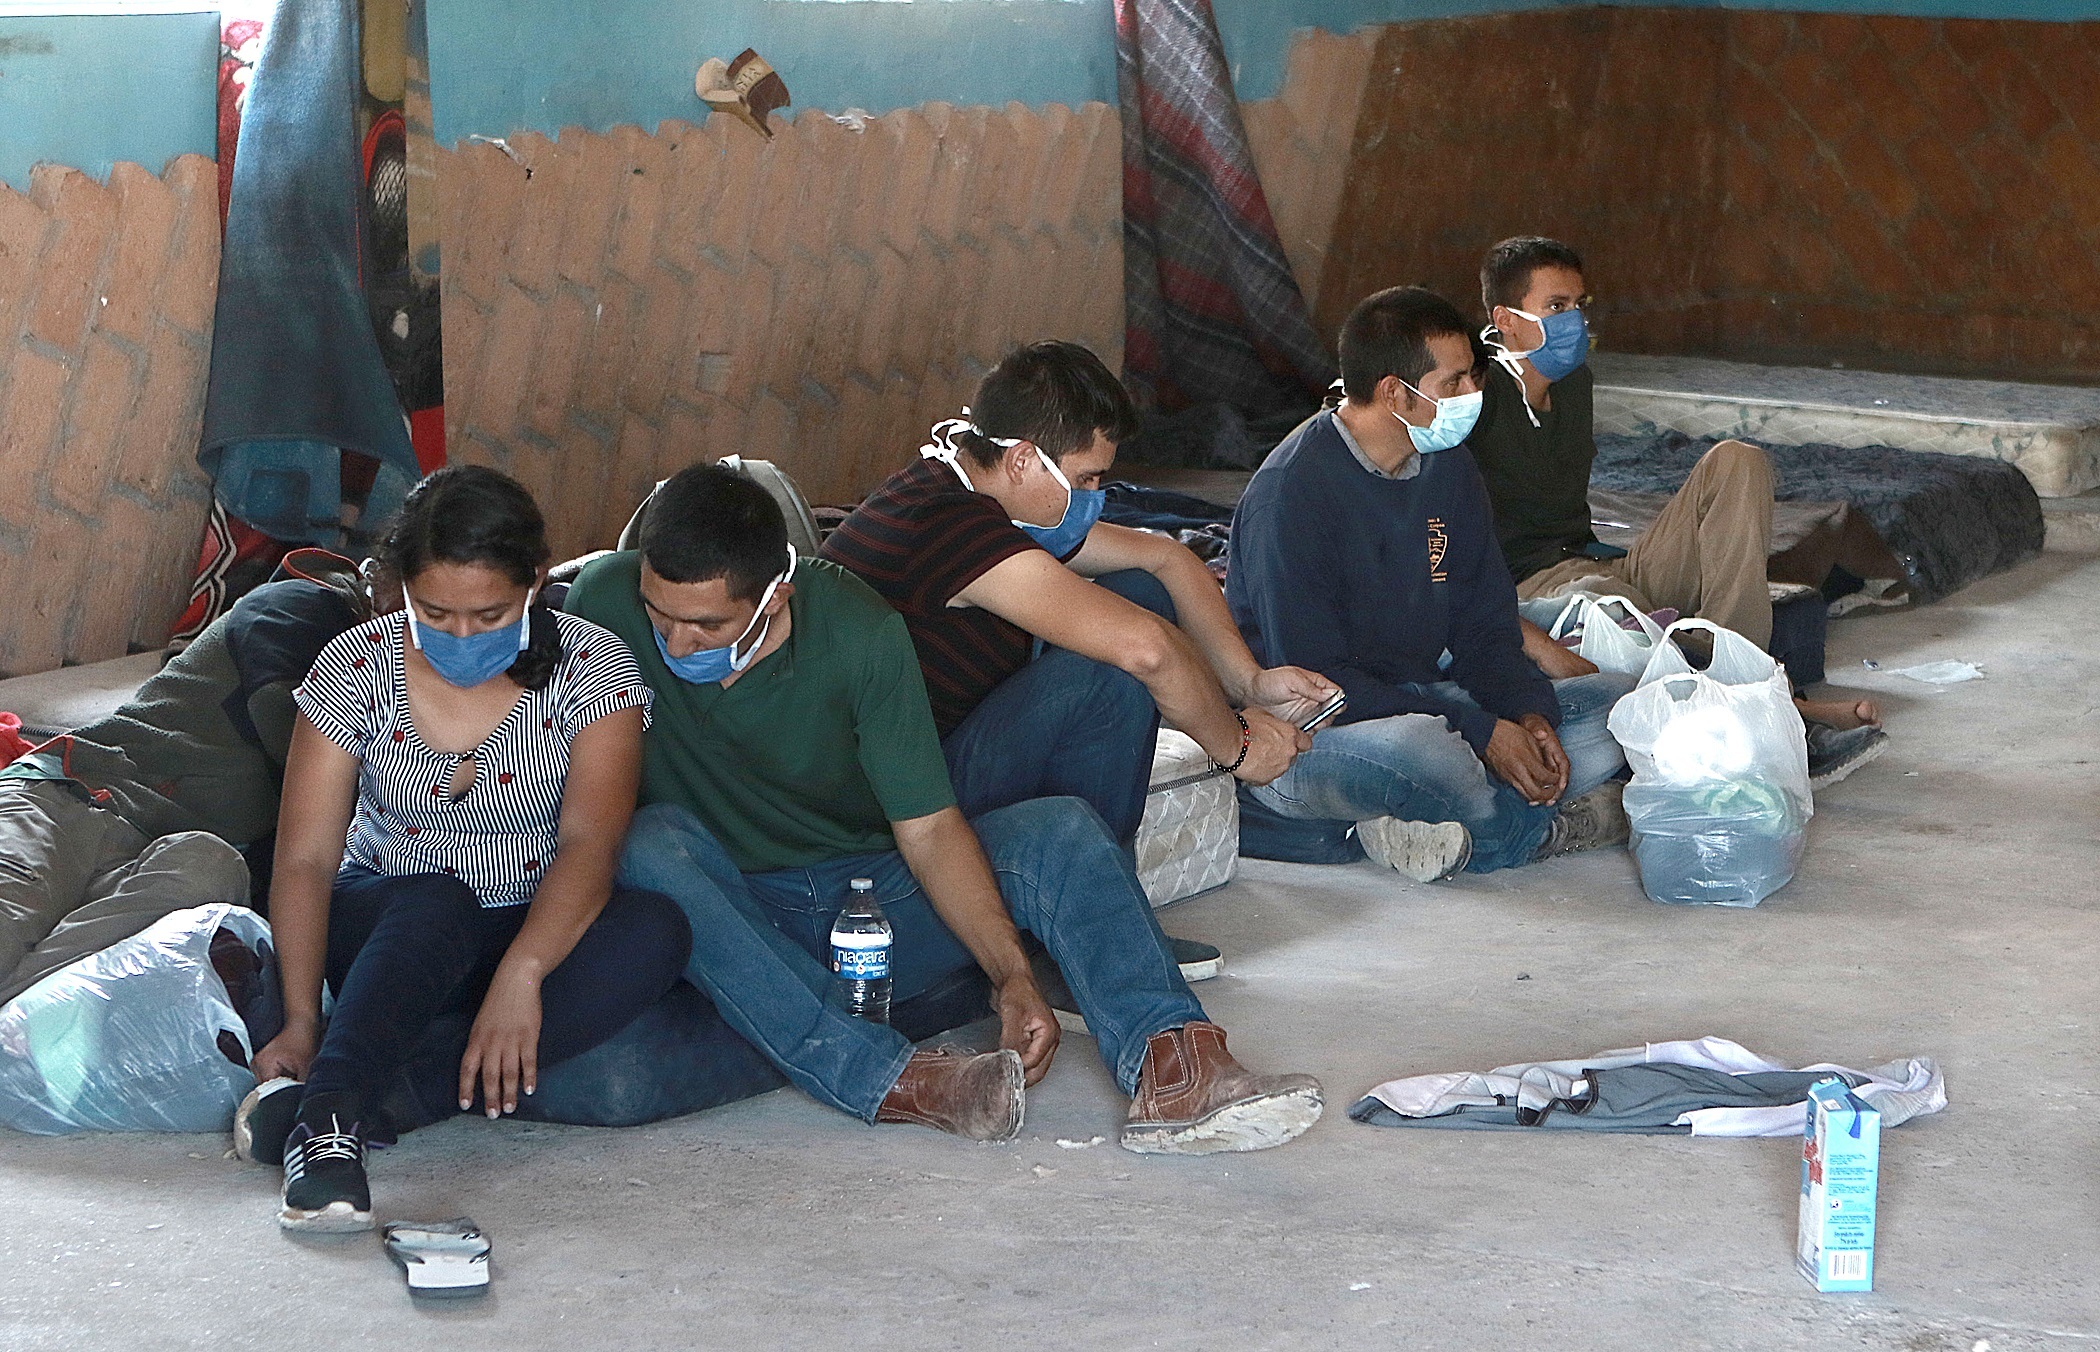 Migrantes que querían cruzar hacia Estados Unidos son arrestados por miembros de la Seguridad Pública,  en Ciudad Juárez, estado de Chihuahua, México.  (Foto Prensa Libre: HemerotecaPL)